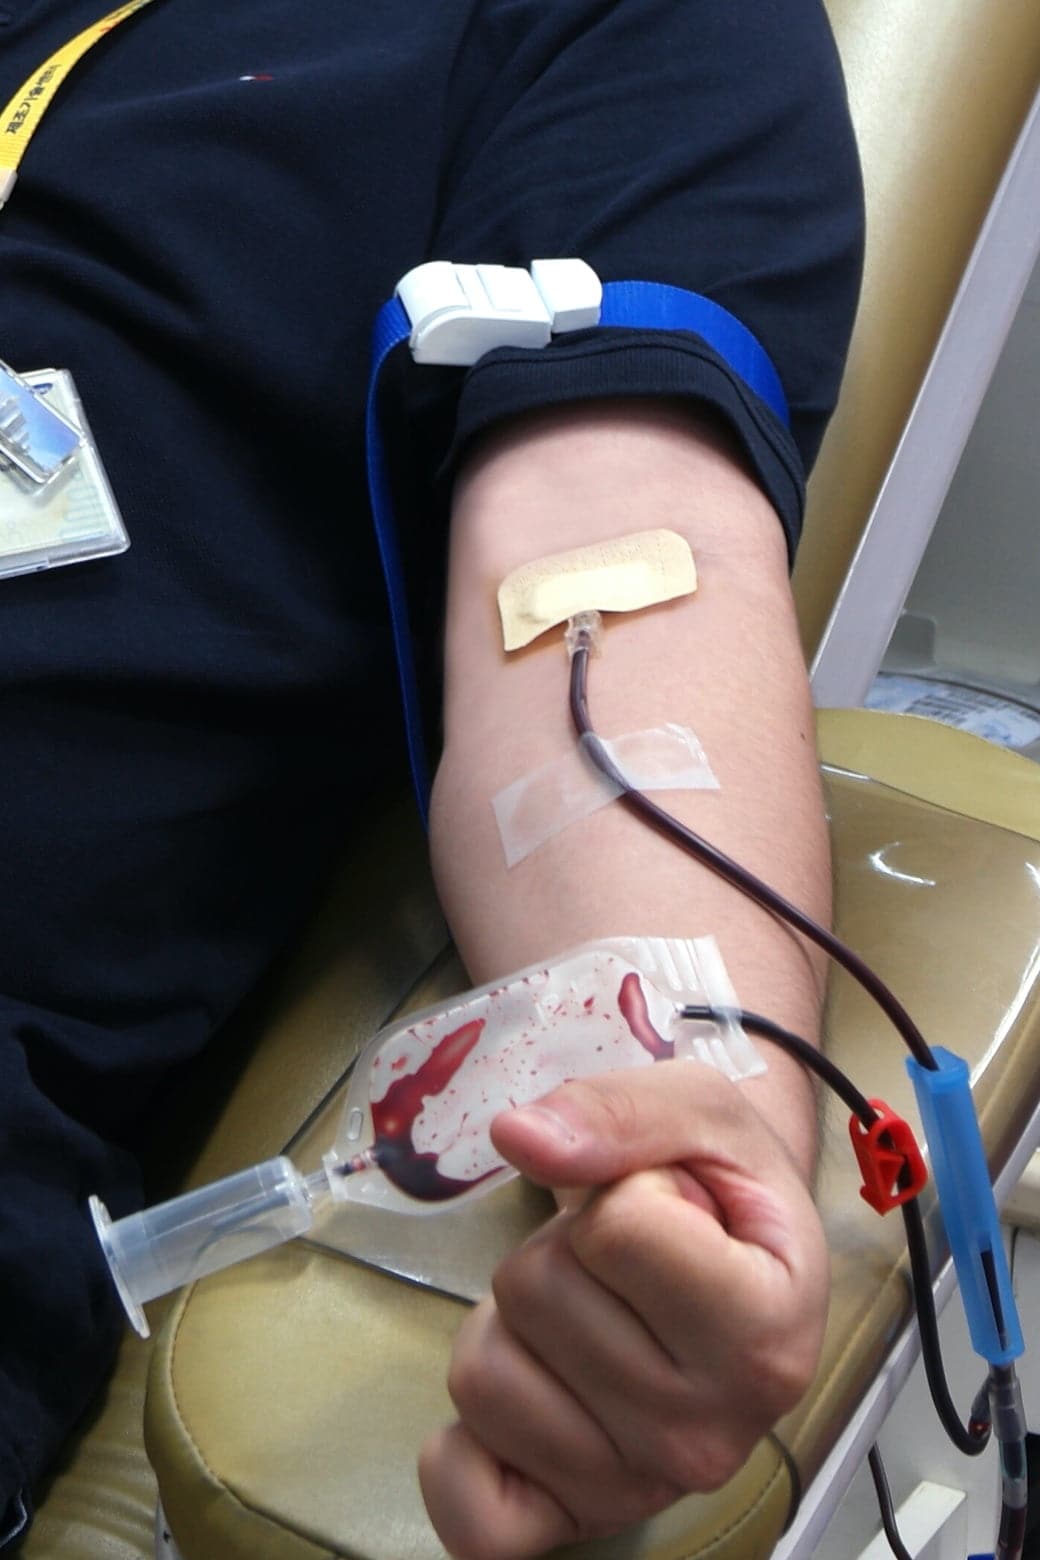 サムスン半導体の社員が腕をまくり献血をしている様子です。